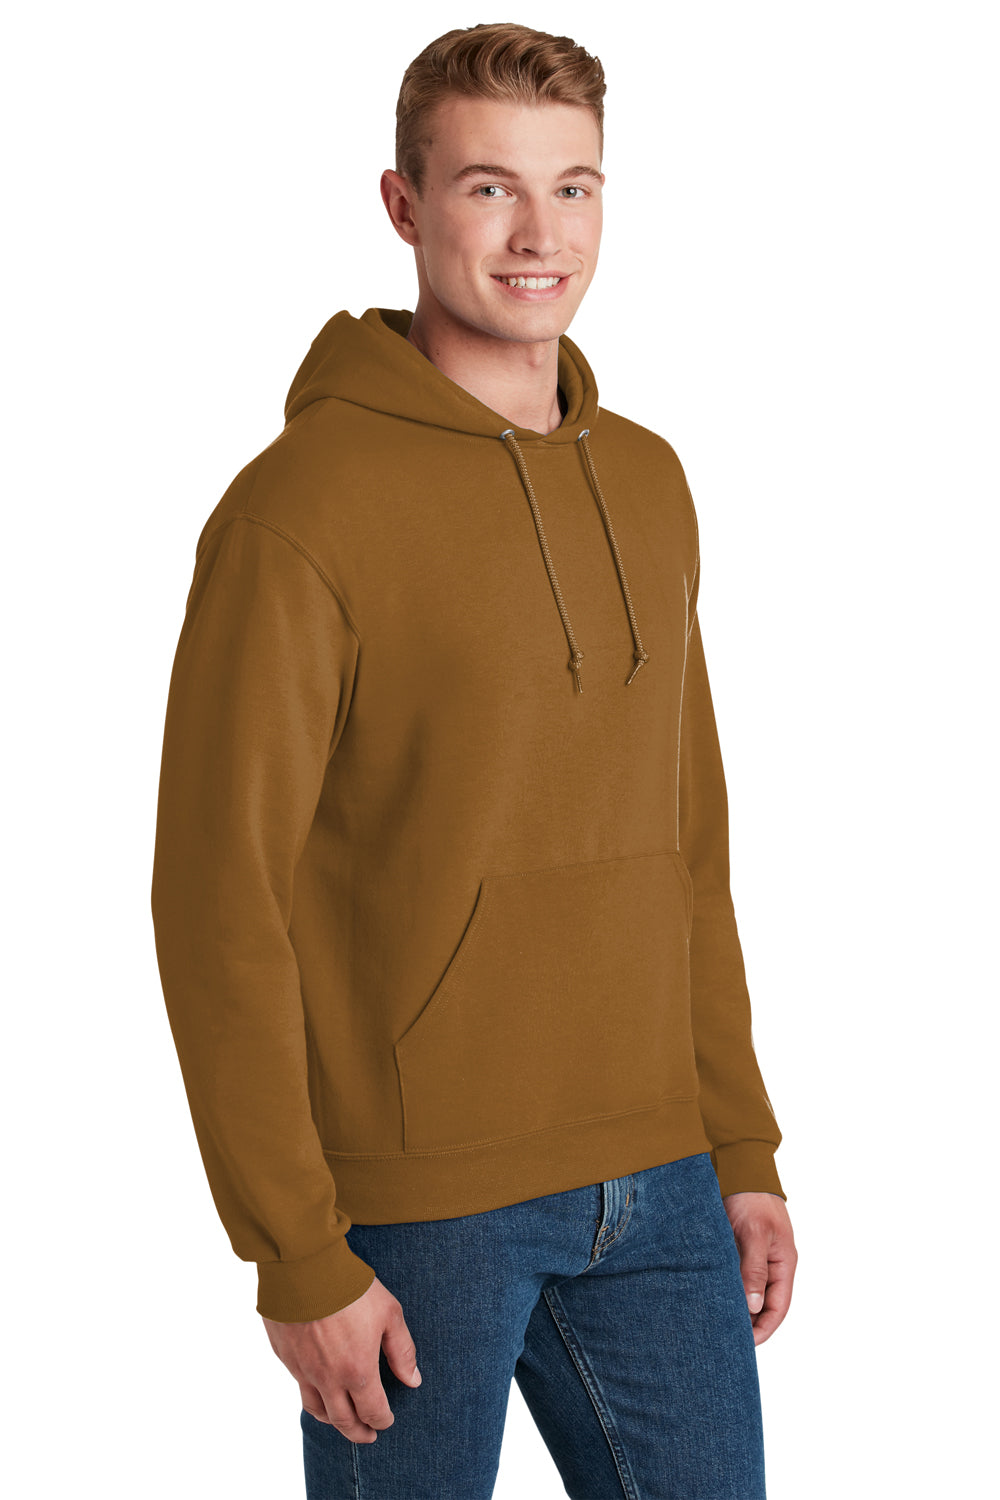 Jerzees 996M/996/996MR Mens NuBlend Fleece Hooded Sweatshirt Hoodie Golden Pecan Brown 3Q